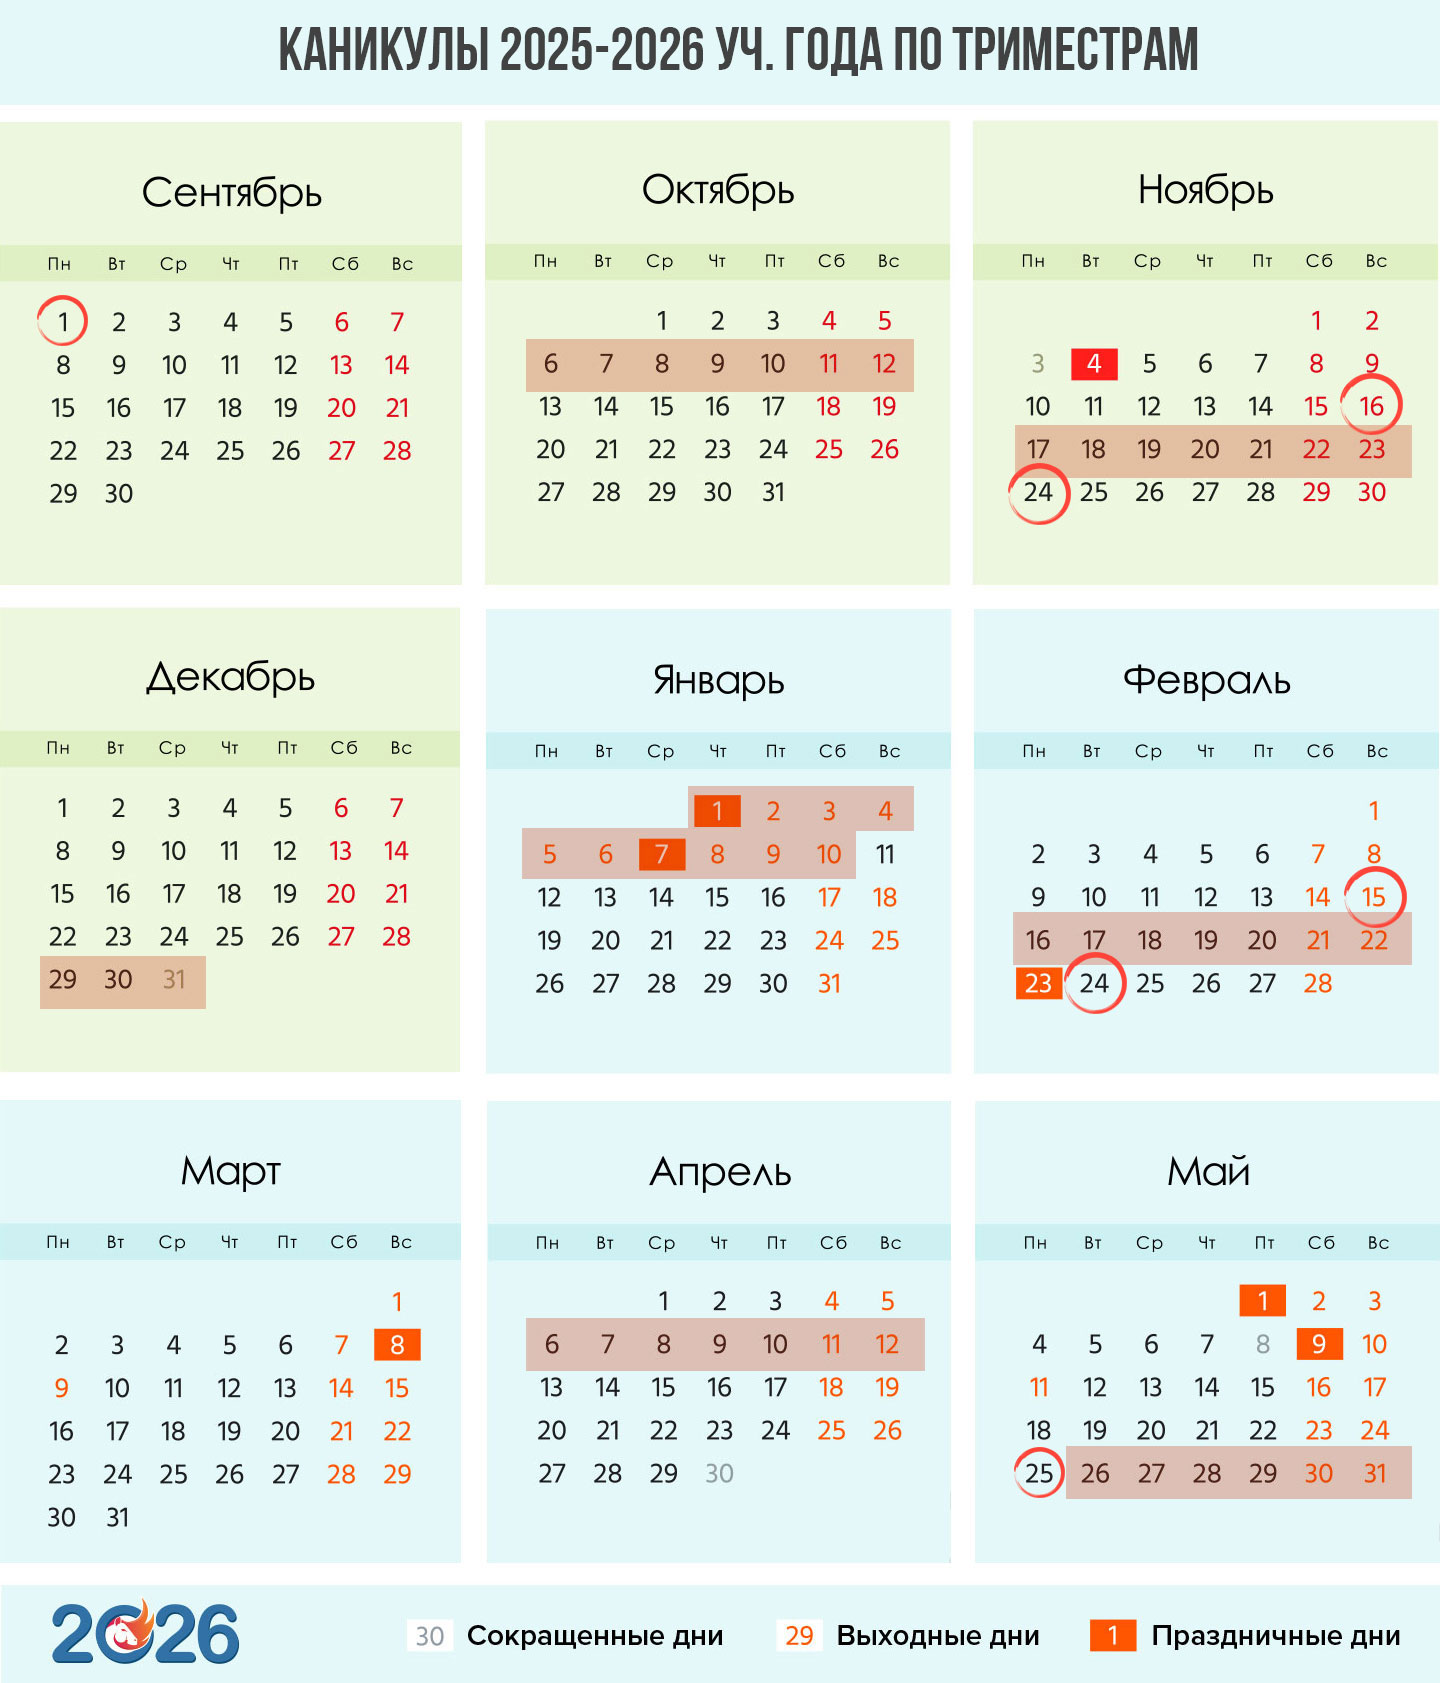 Календарь каникул по триместрам на 2025-2026 учебный год